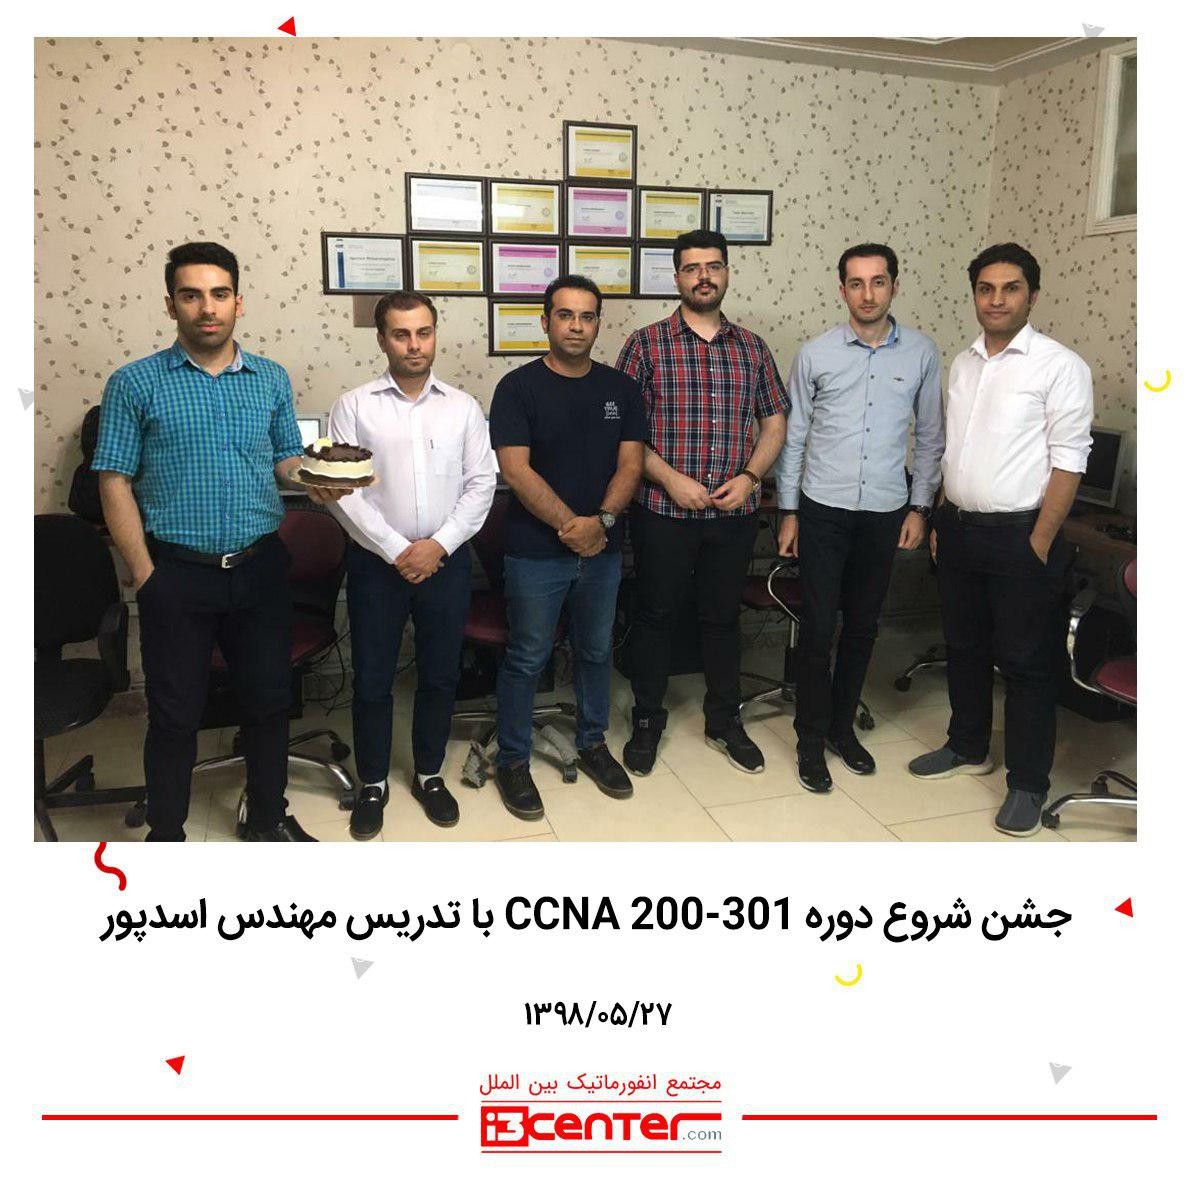 جشن شروع دوره CCNA 200-301  با تدریس مهندس اسدپور